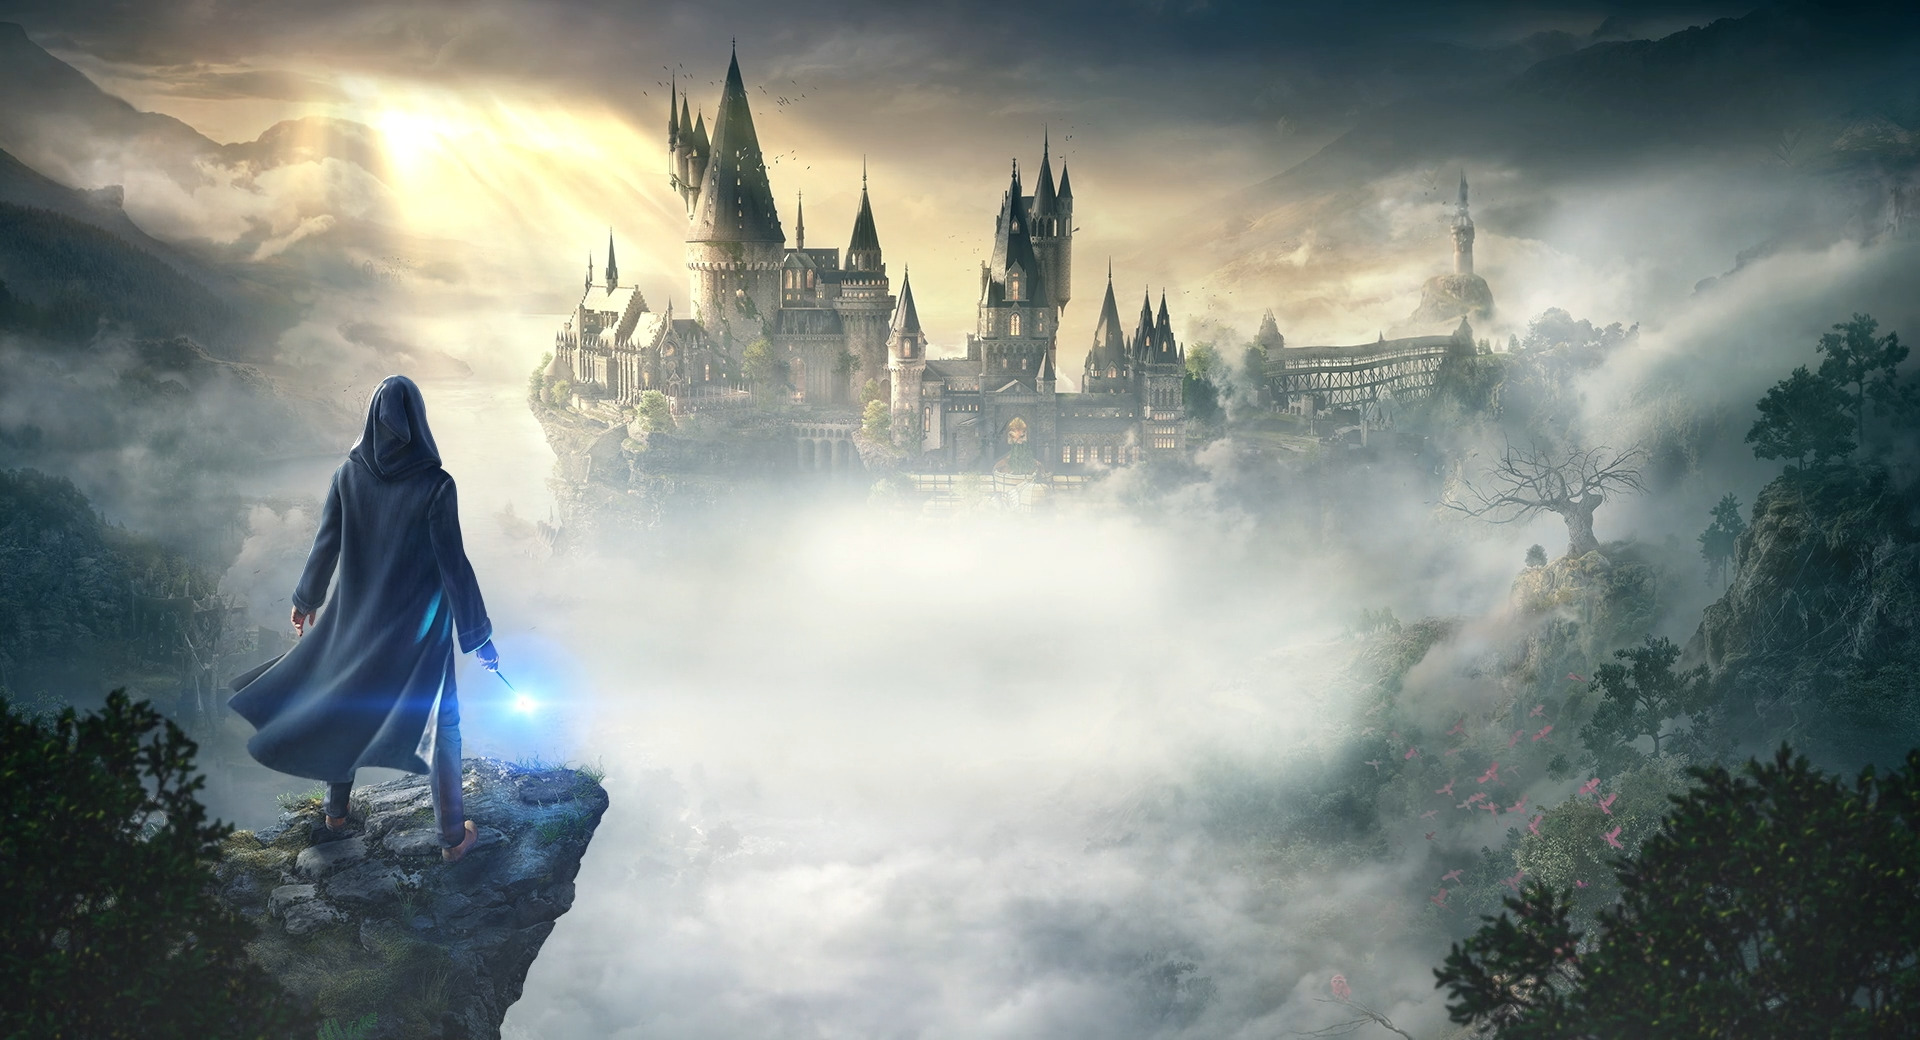 Hogwarts Legacy: Requisitos para PC são revelados!